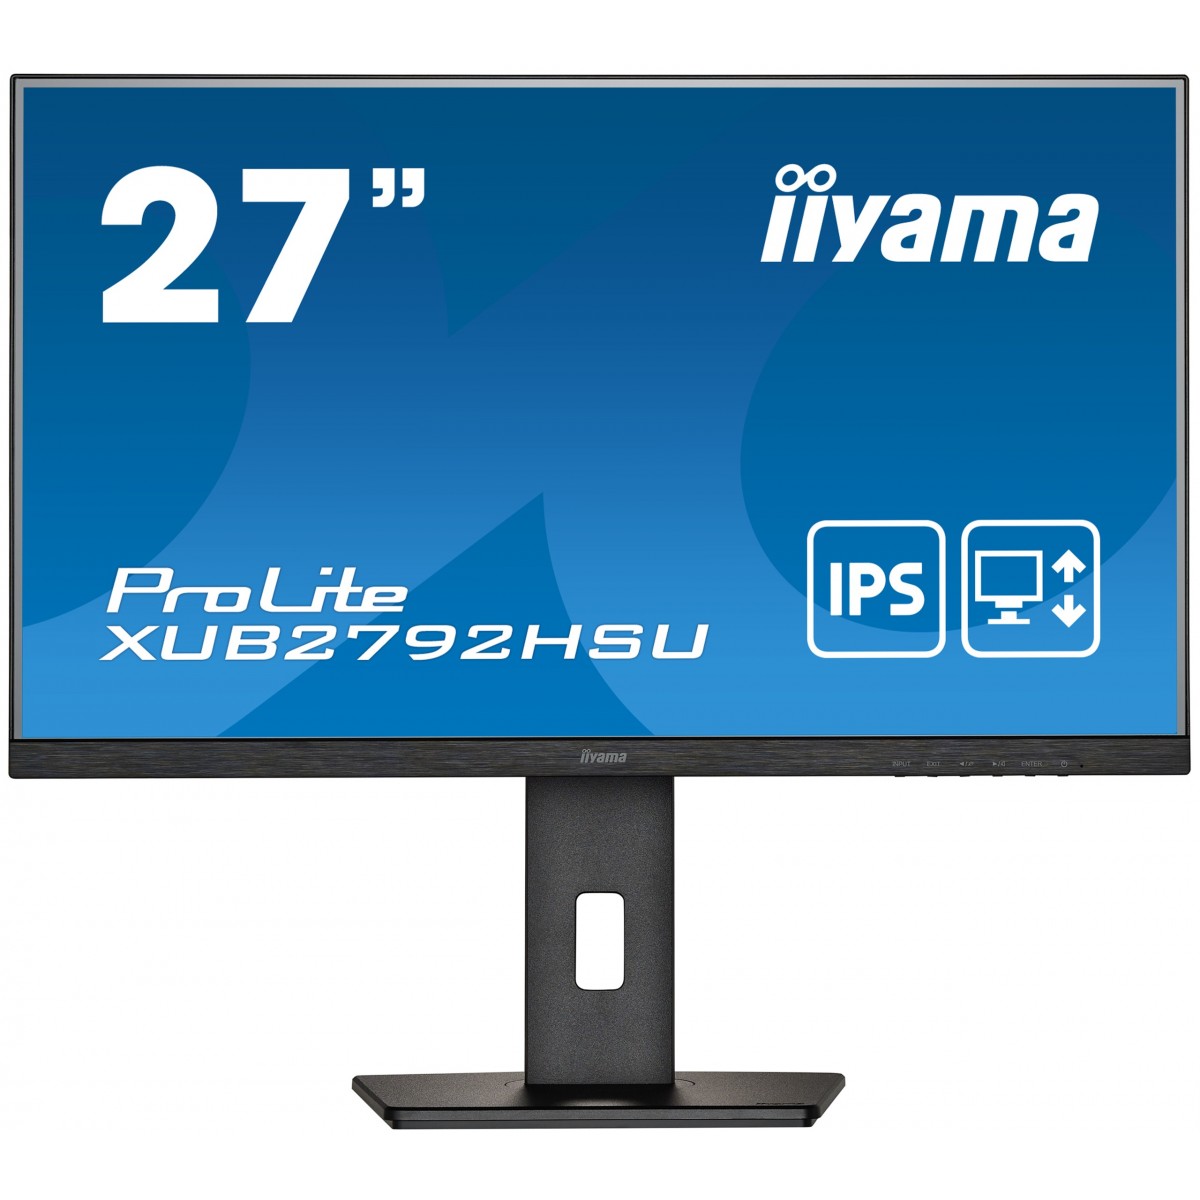 Iiyama 27W LCD Business Full HD IPS - Flat Screen - 27